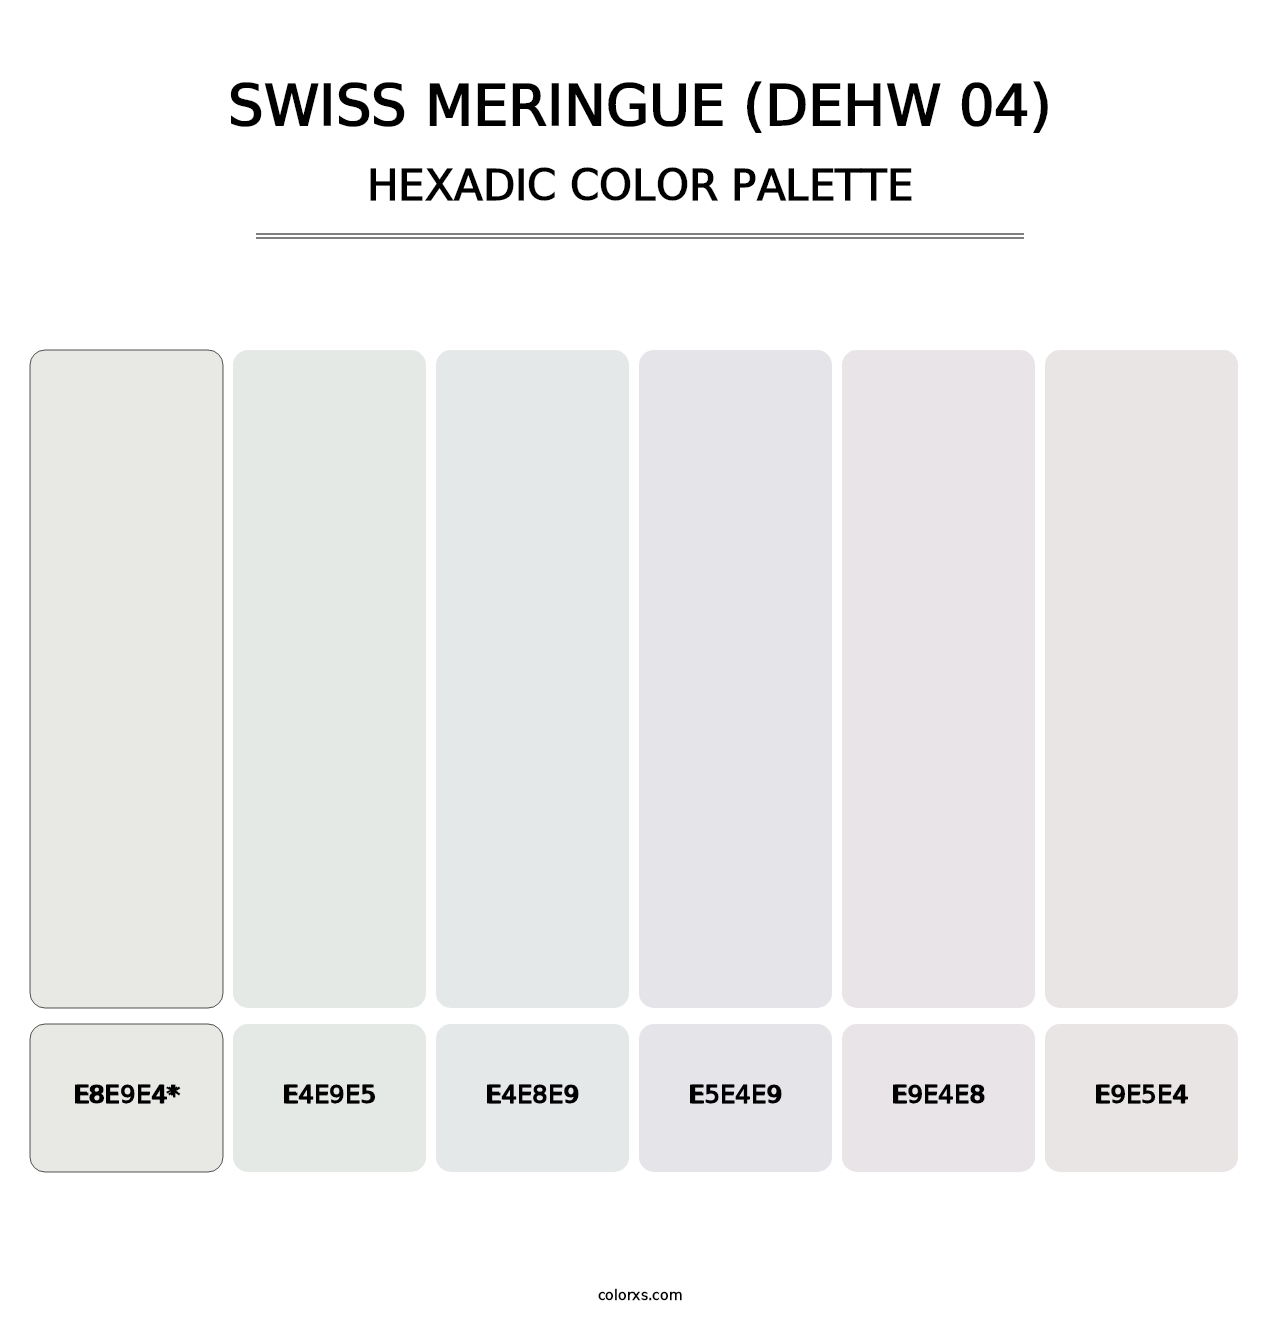 Swiss Meringue (DEHW 04) - Hexadic Color Palette